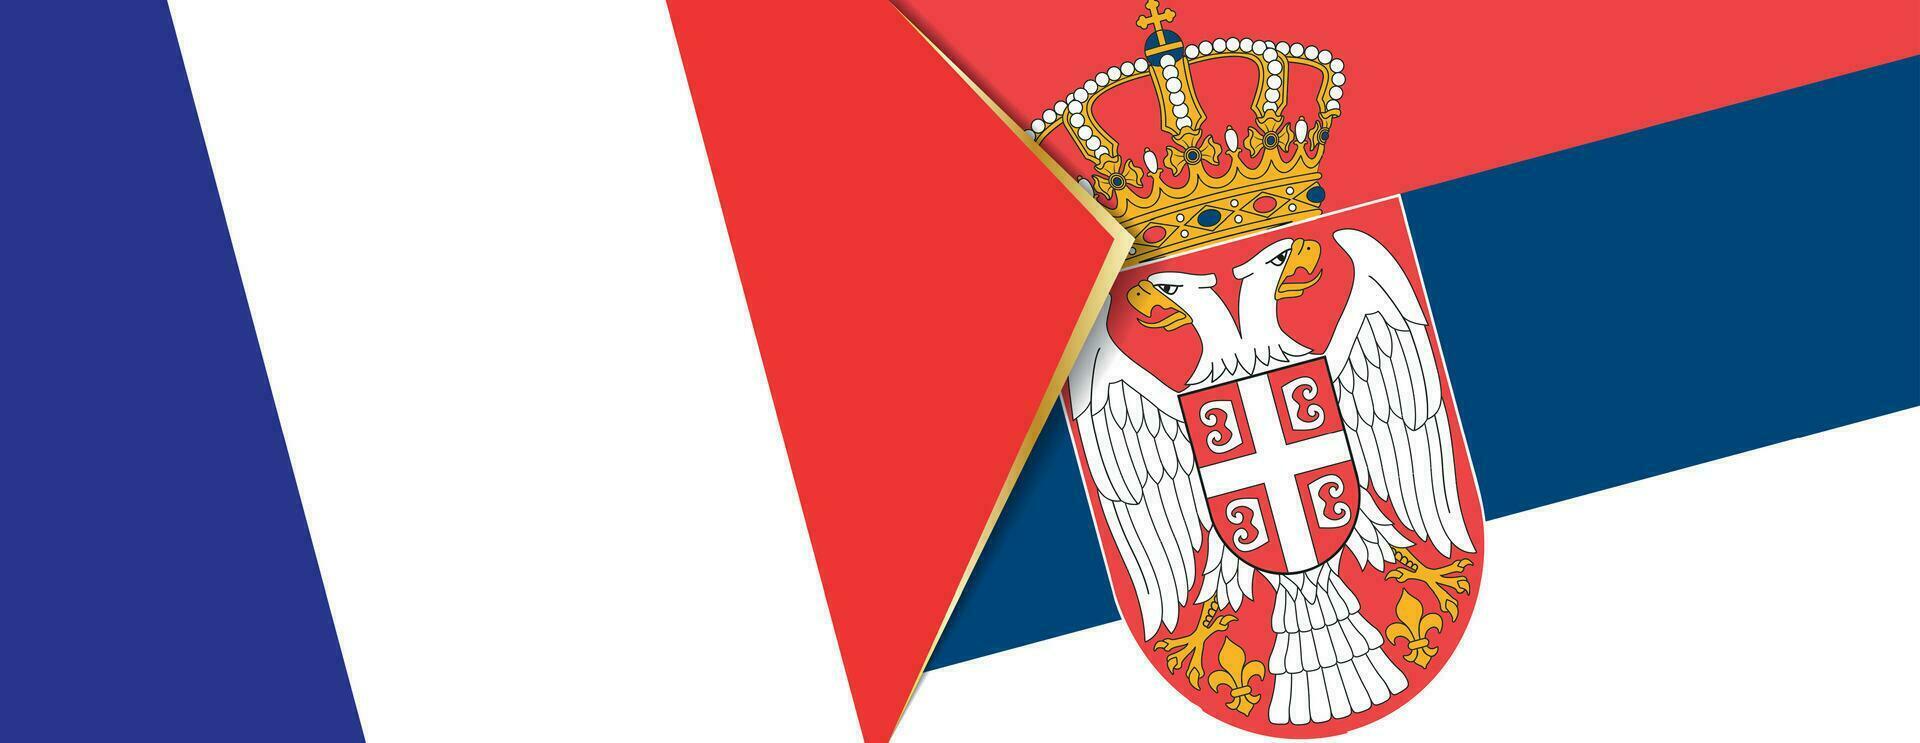 Francia y serbia banderas, dos vector banderas